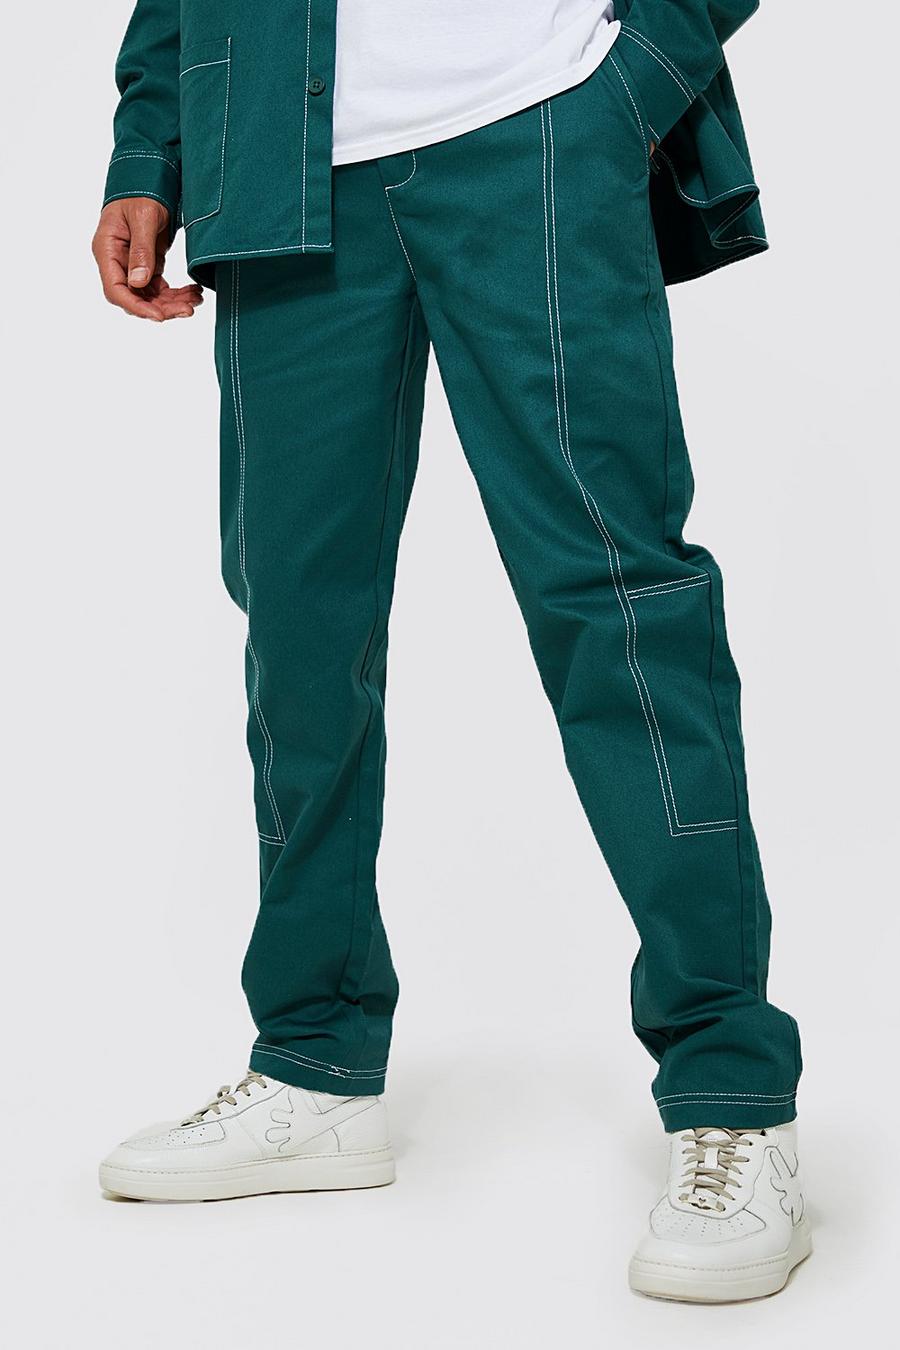 Pantaloni dritti Tall in twill con cuciture a contrasto, Dark green verde